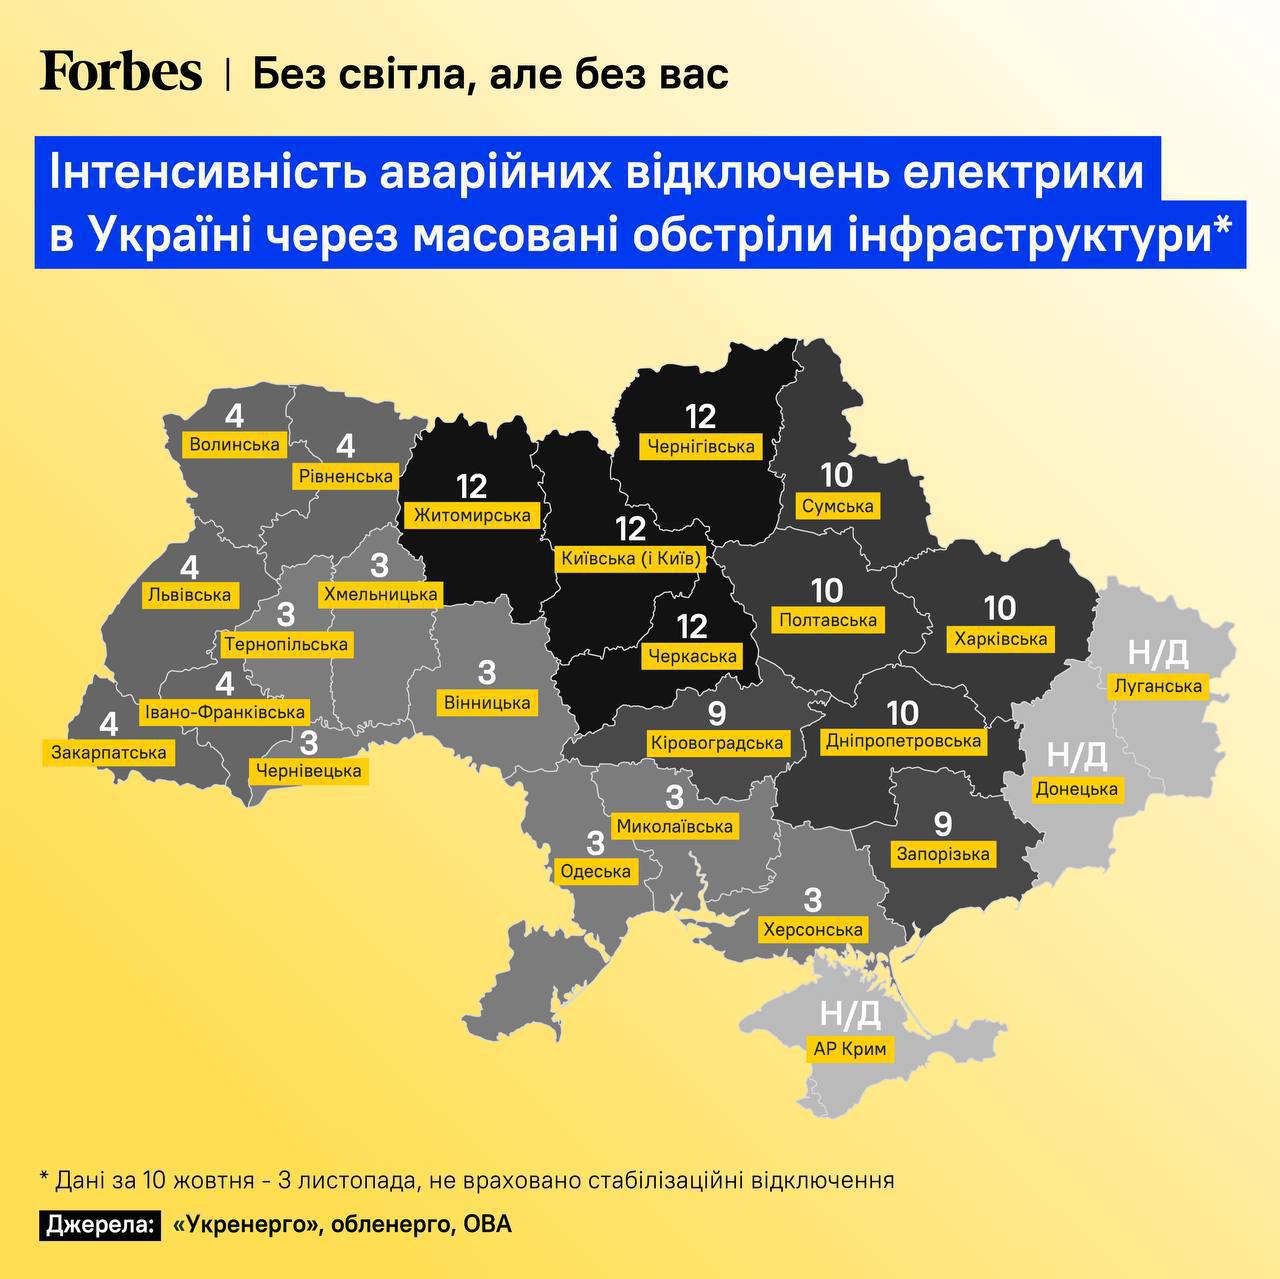 💡Карта, которая показывает интенсивность аварийных отключений электричества в Украине по областям